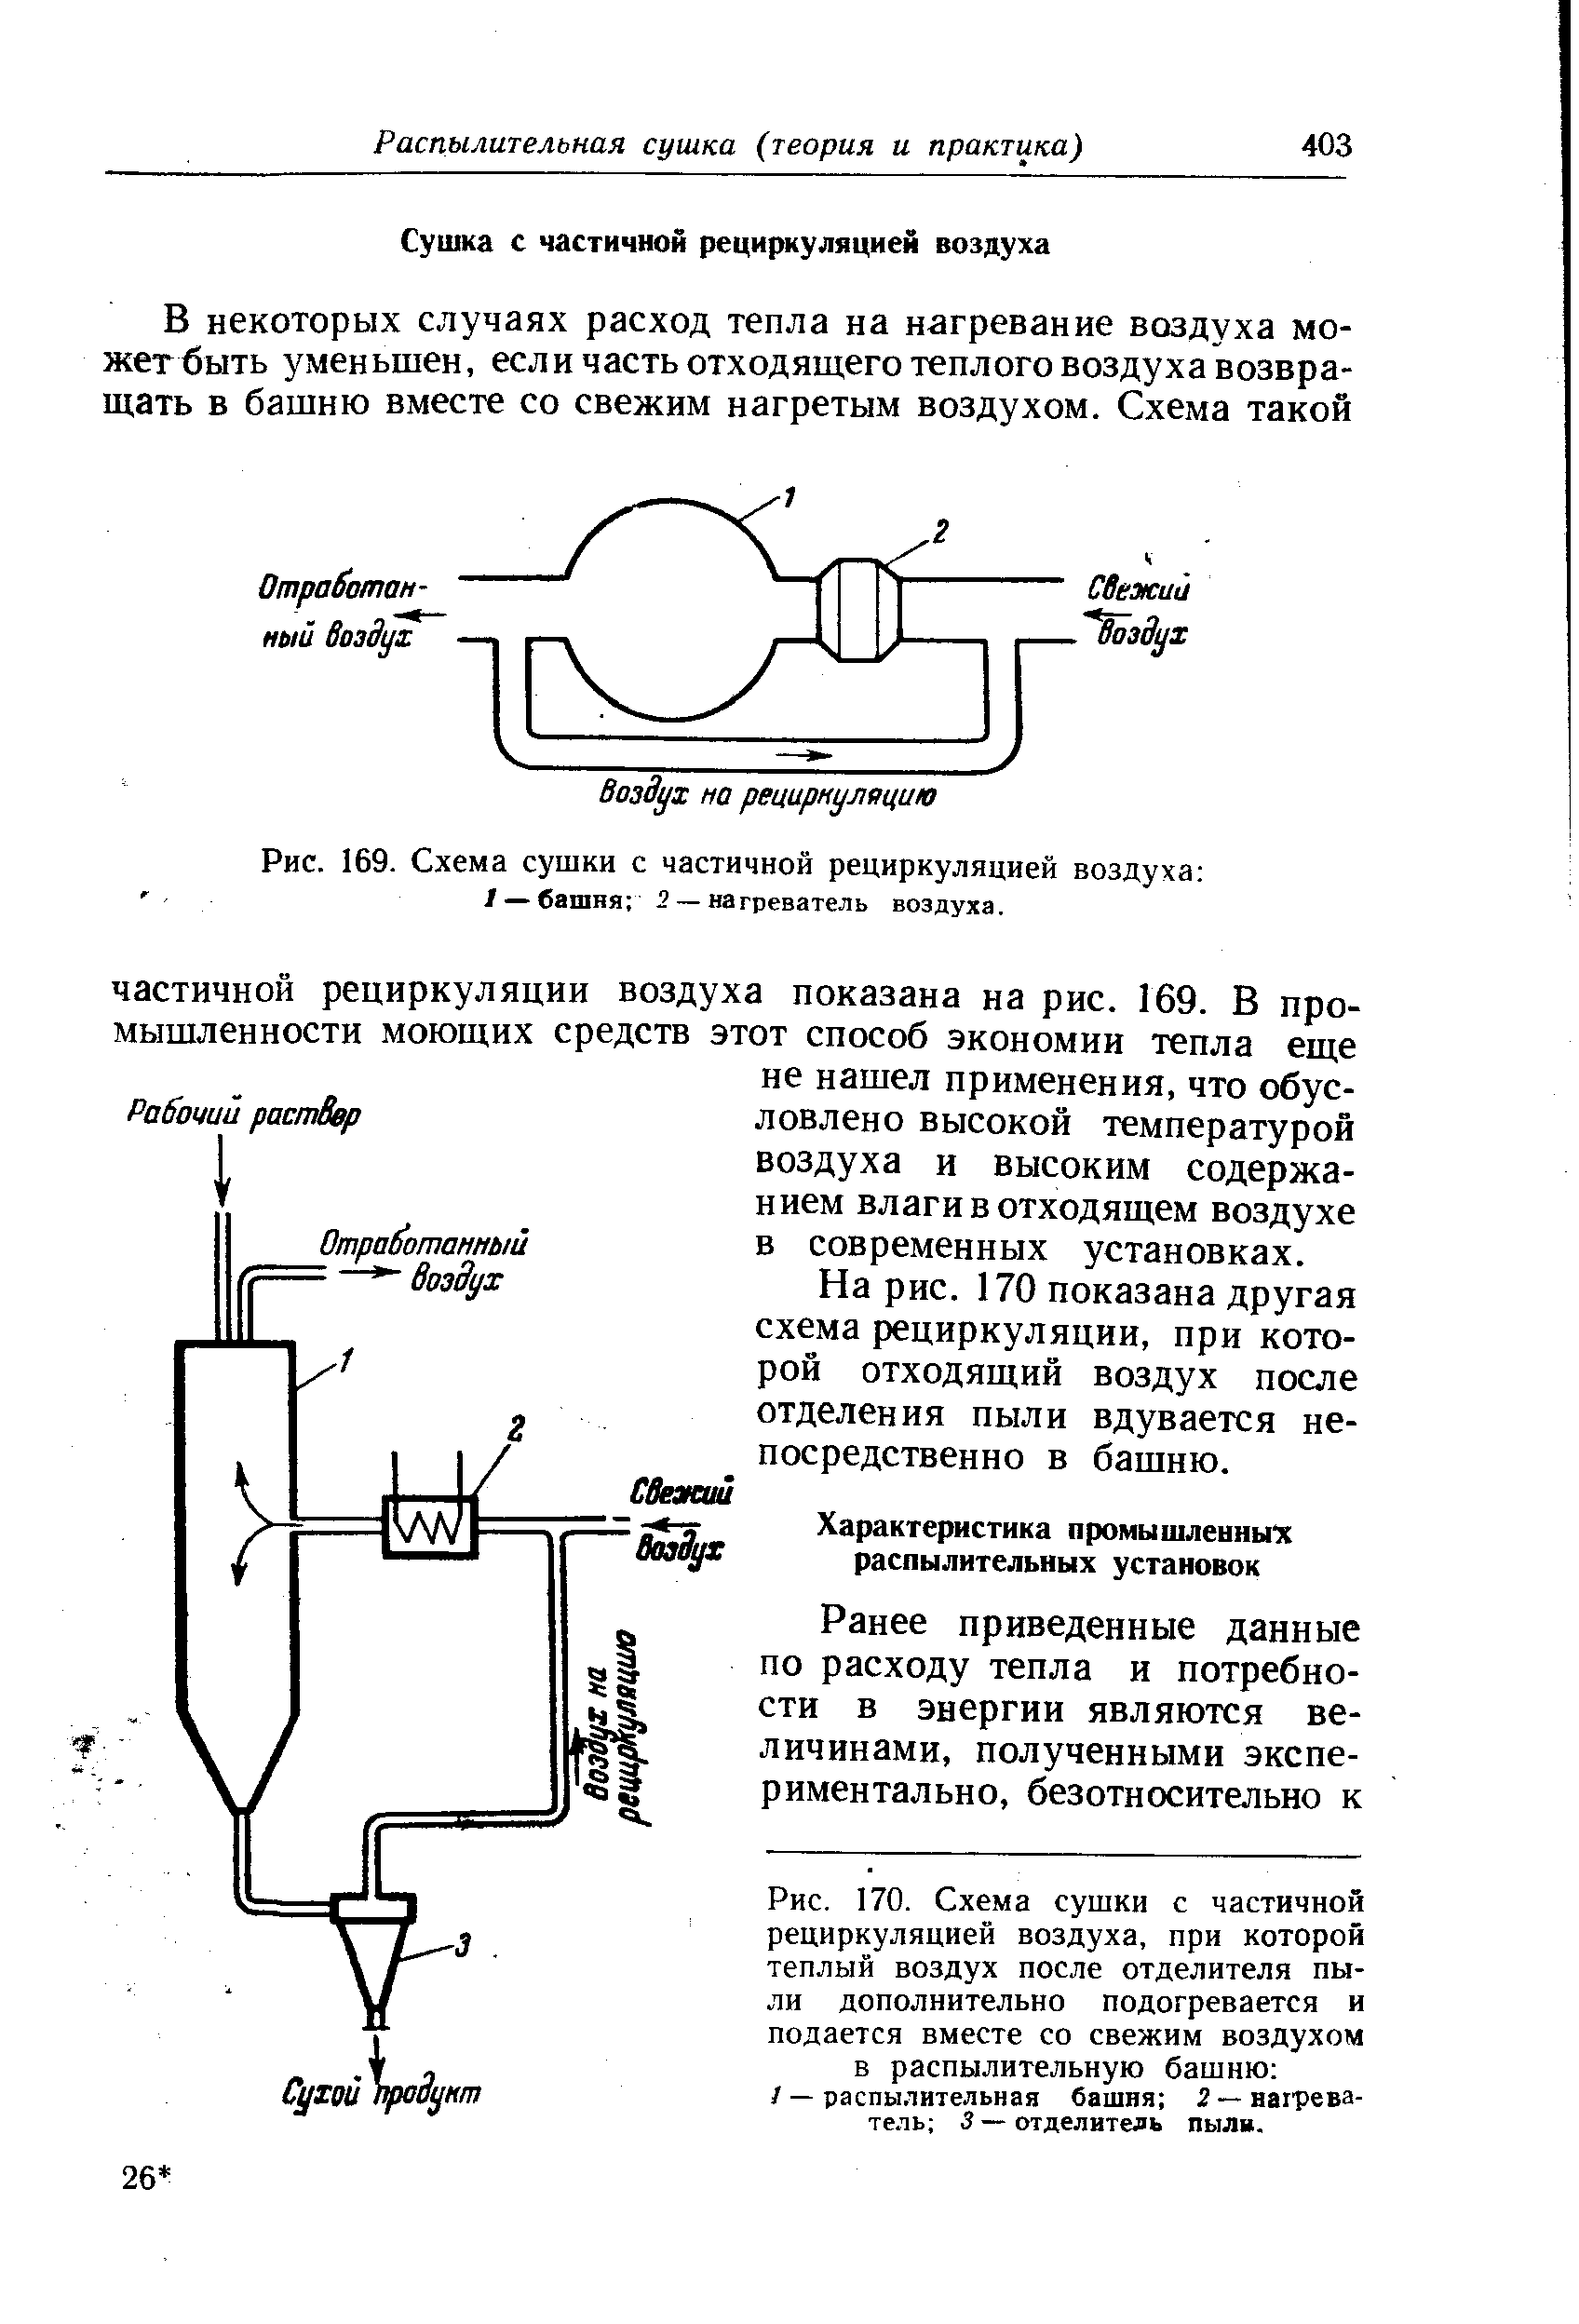 На рис. 170 показана другая схема рециркуляции, при которой отходящий воздух после отделения пыли вдувается непосредственно в башню.